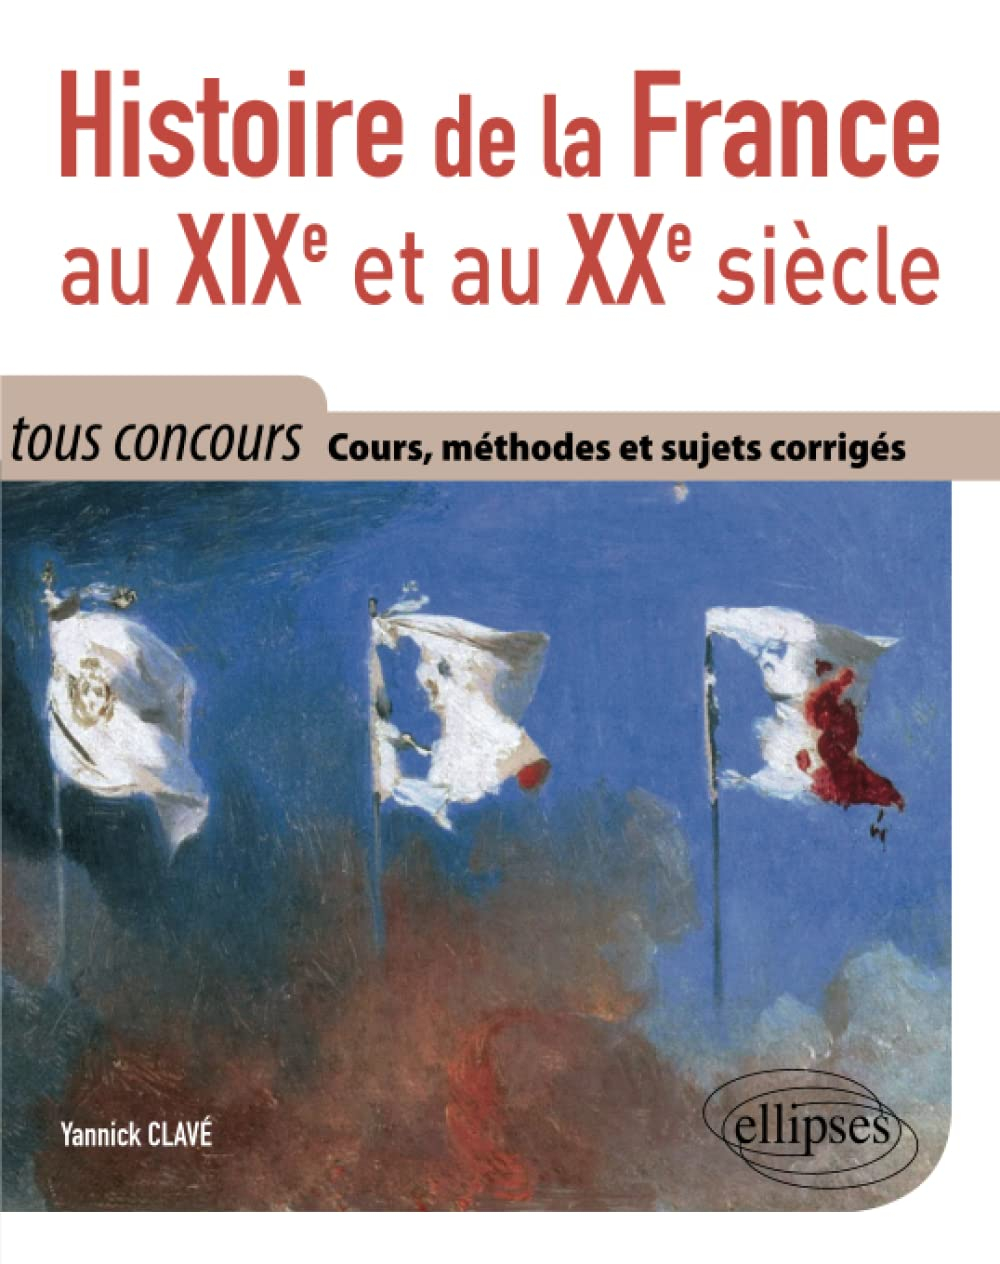 Histoire de la France au XIXe et au XXe siècle : cours, méthodes et sujets corrigés : tout en un, to